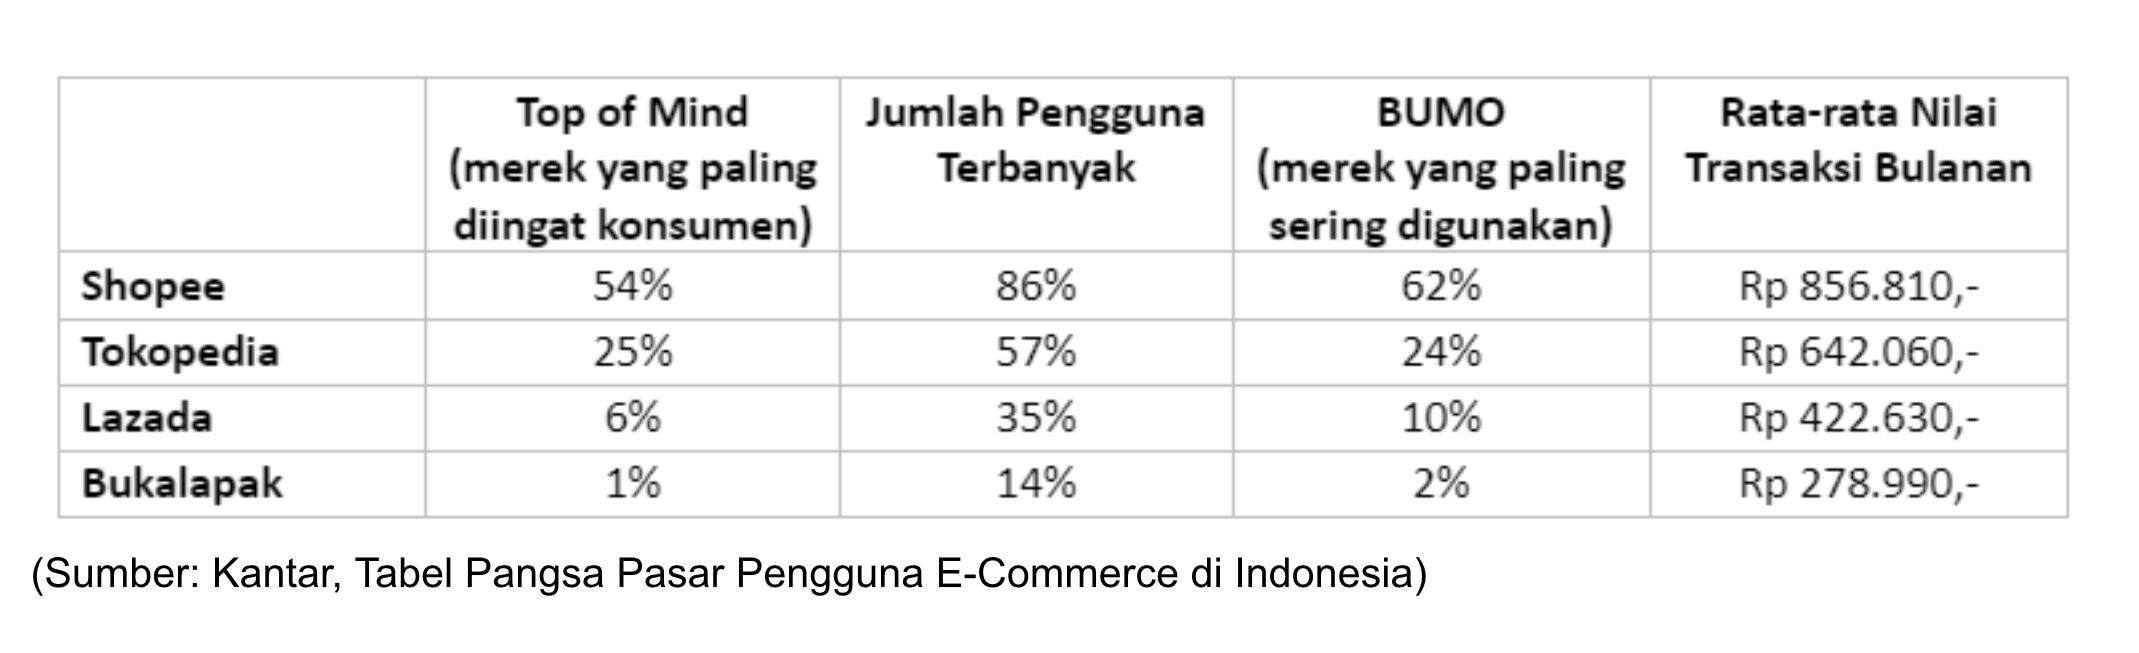 Hasil riset Kantar menemukan dari 4 nama besar e-commerce di Indonesia, Shopee masih menjadi yang paling unggul 